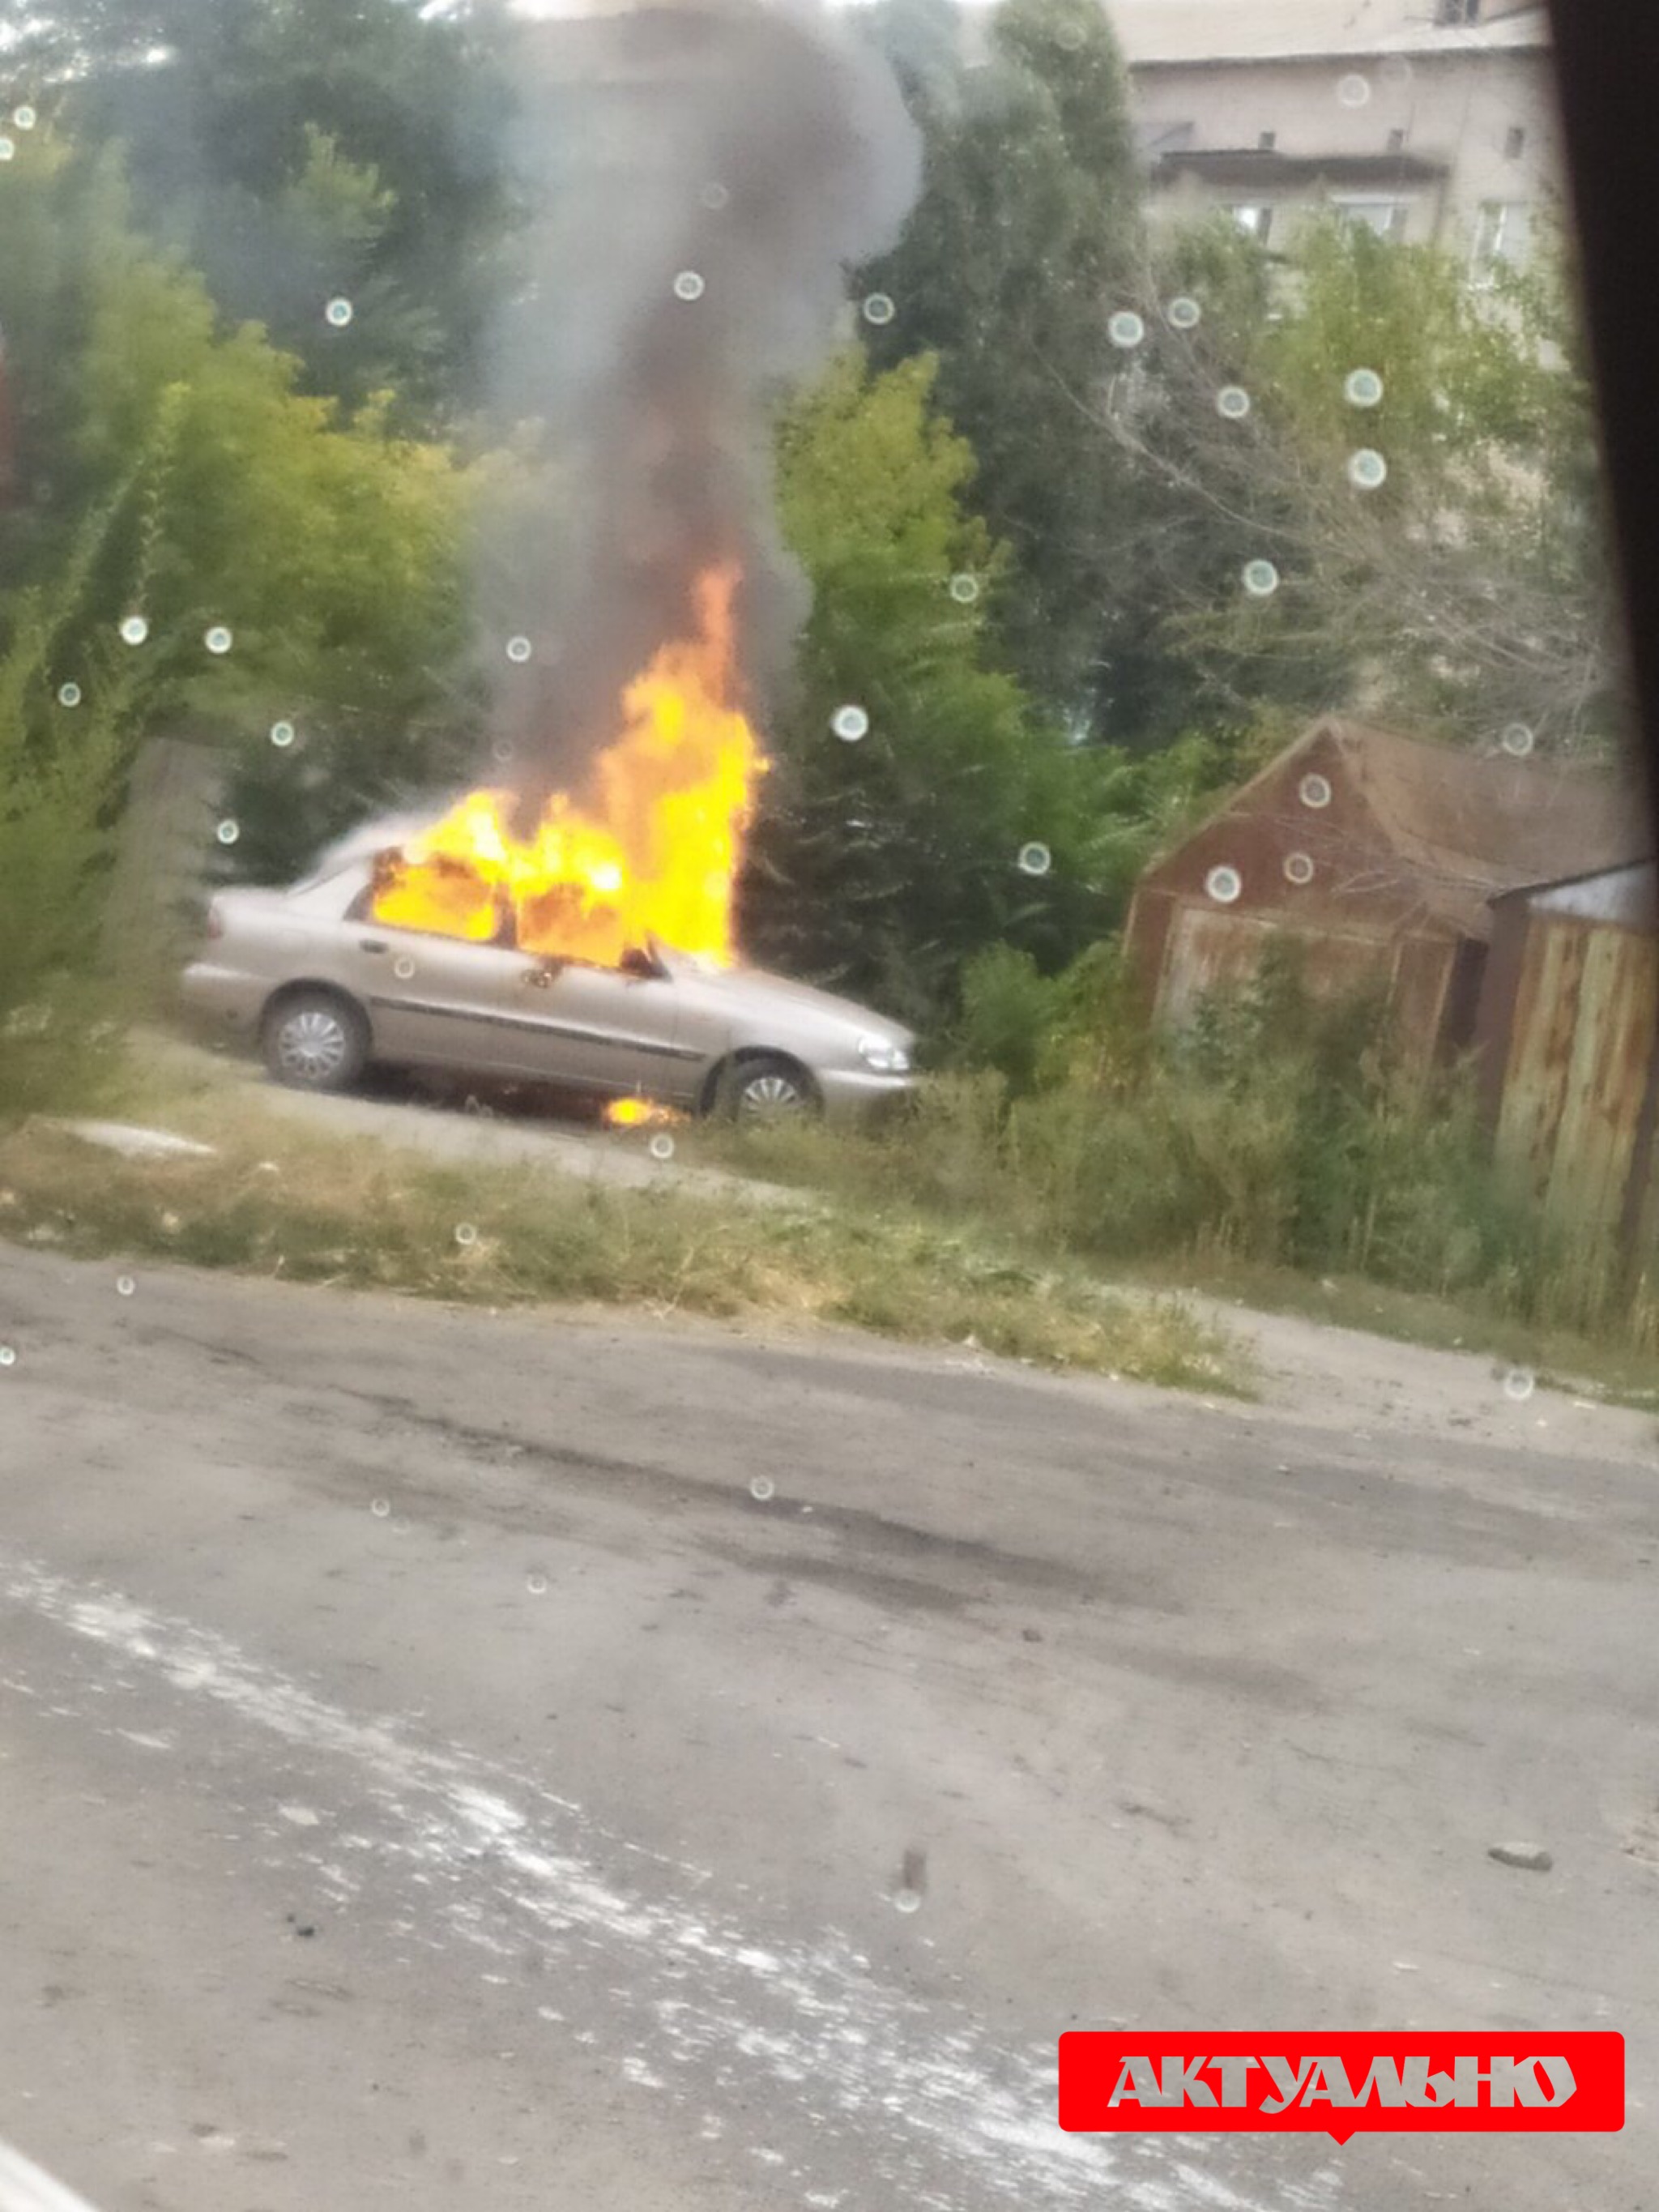 Машину сожгли за гаражами и выбросили оружие: подробности в убийстве замглавы Акимовской ОТГ (ФОТО)